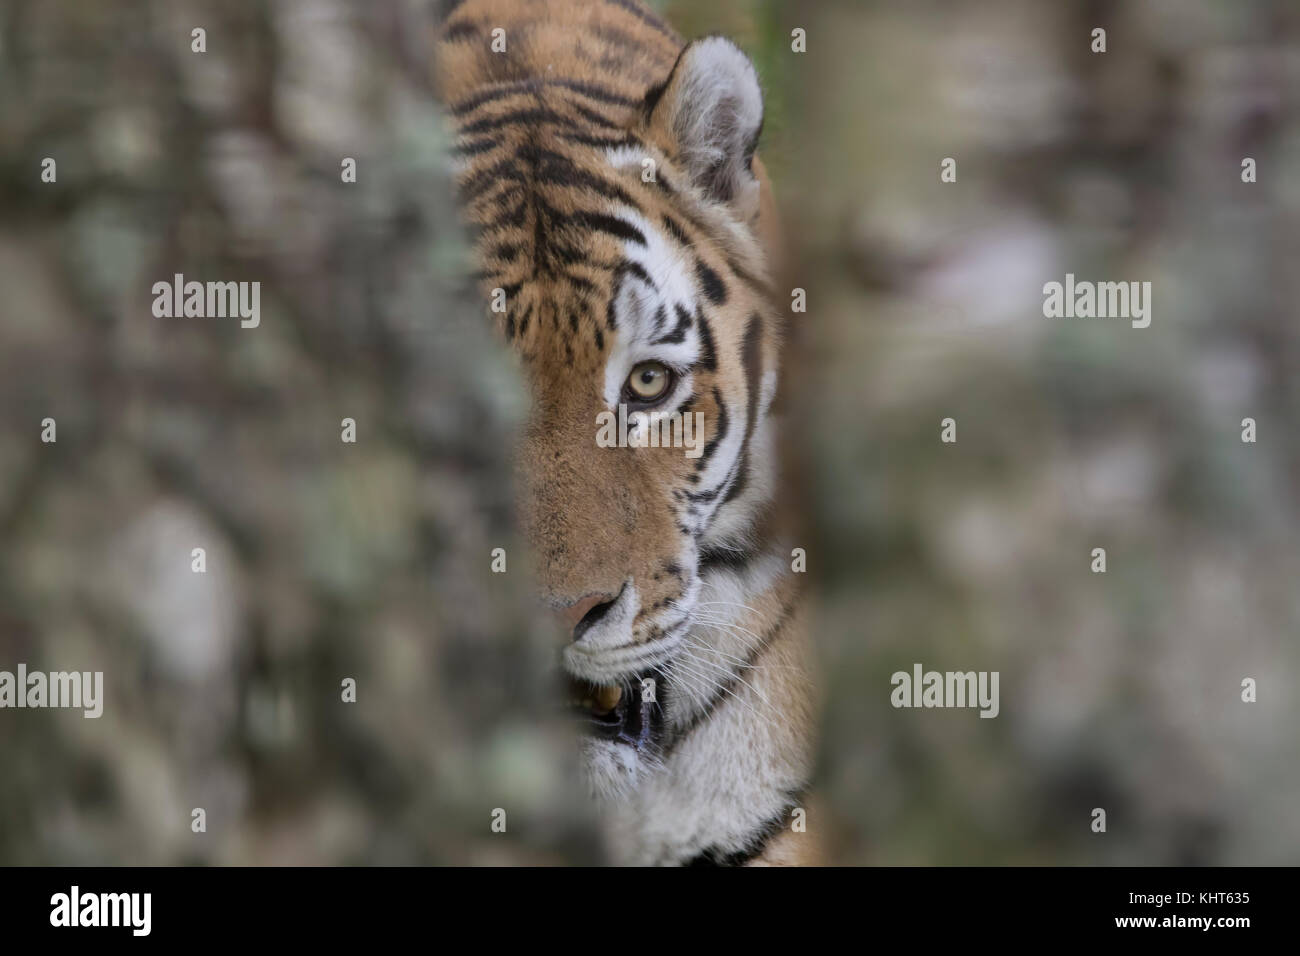 Tigre di amur, Panthera tigris altaica, prigionieri close up verticale della faccia patterns plus oltre ad alberi. Foto Stock